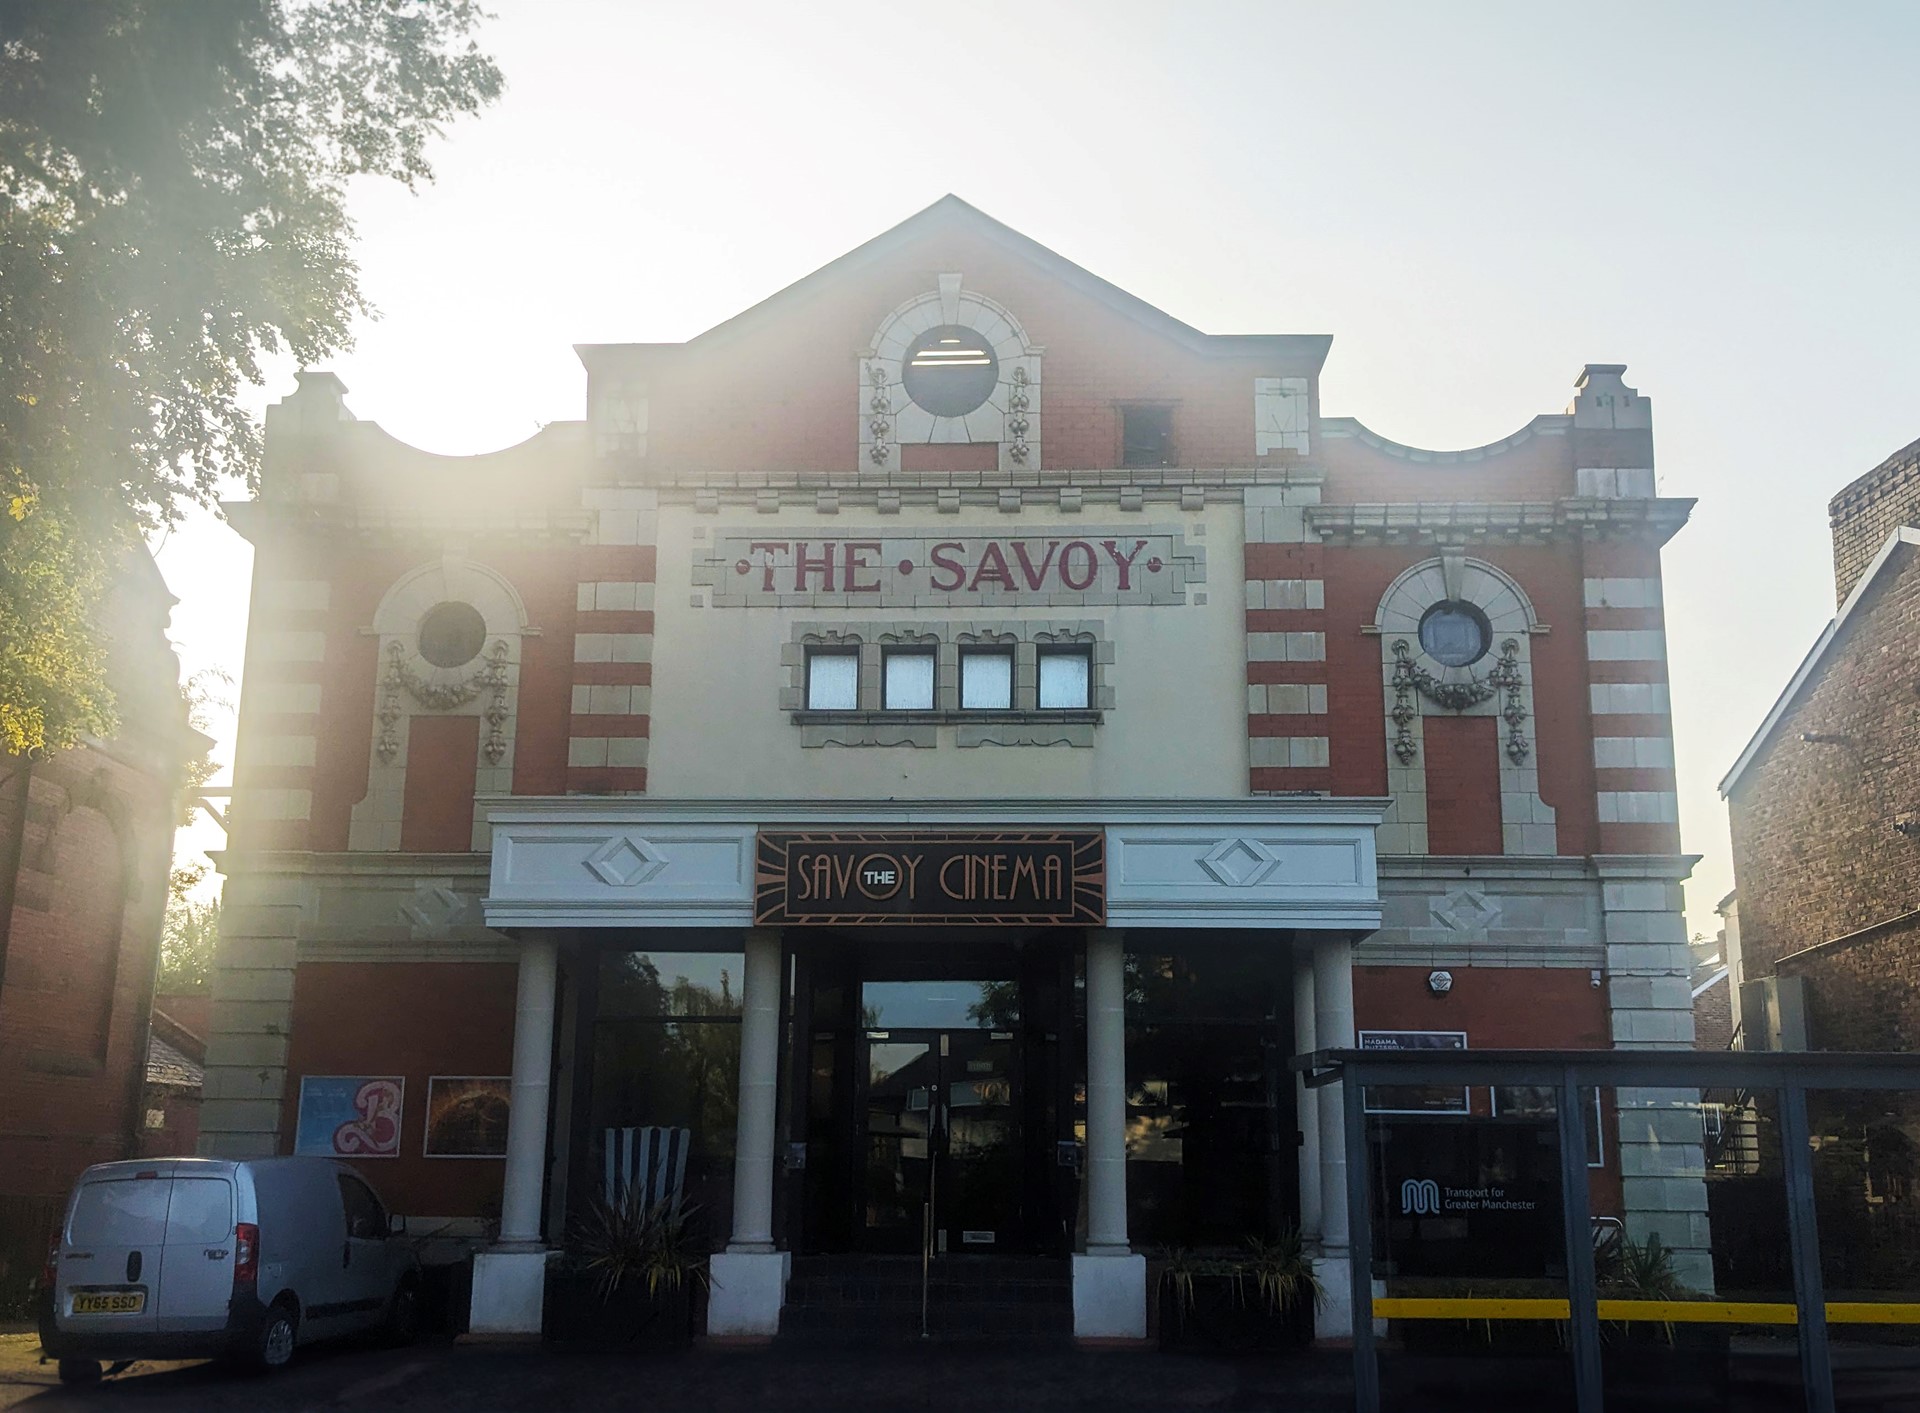 Savoy cinema in Heaton Moor